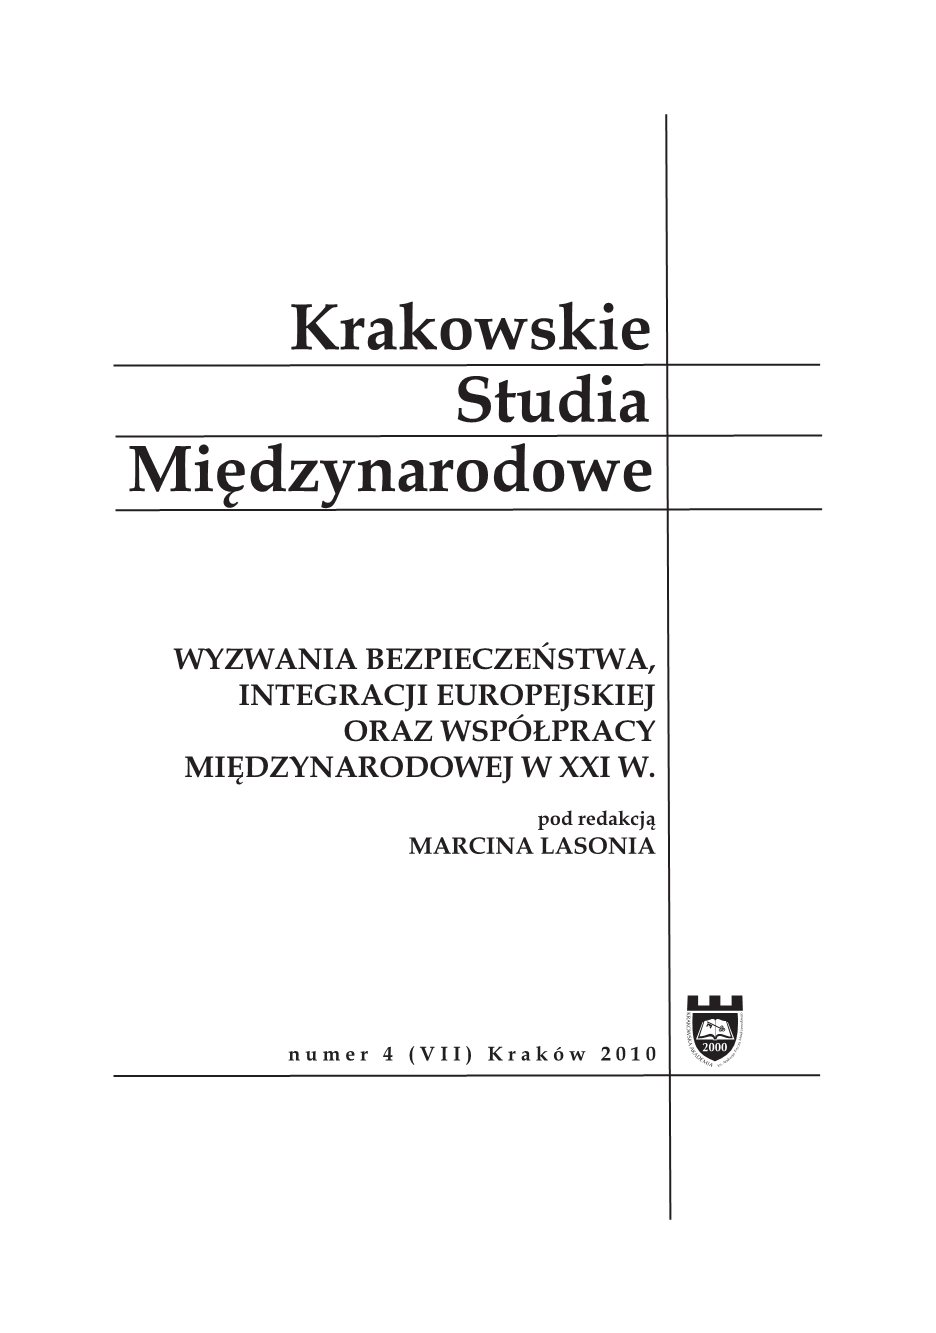 Rosja. Ambicje i możliwości w XXI wieku, red. Kazimierz Albin Kłosiński [Wydawnictwo KUL, Lublin 2010, 368 pp.] Cover Image